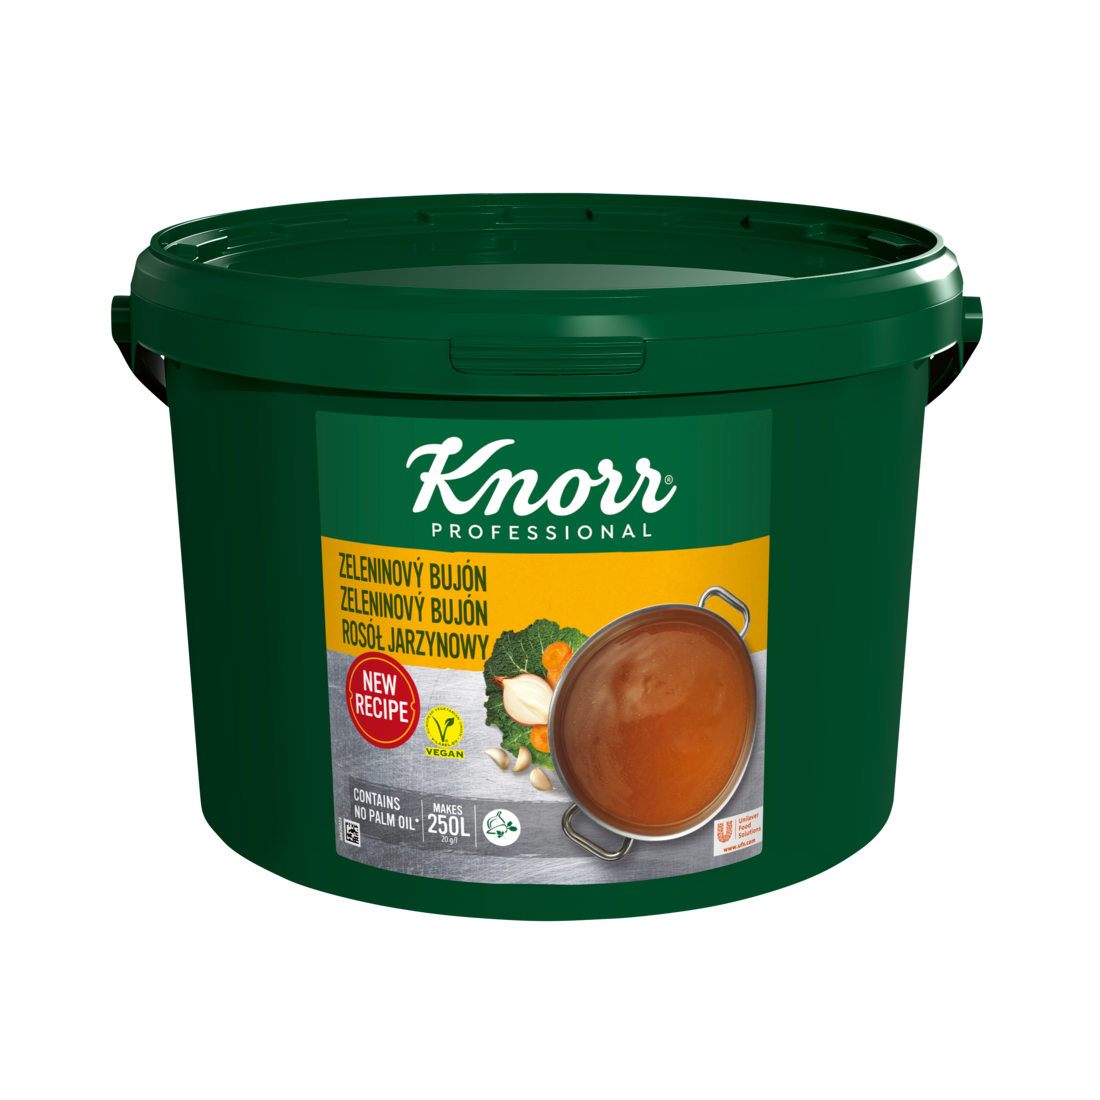 KNORR Professional Zeleninový bujón 5 kg - 